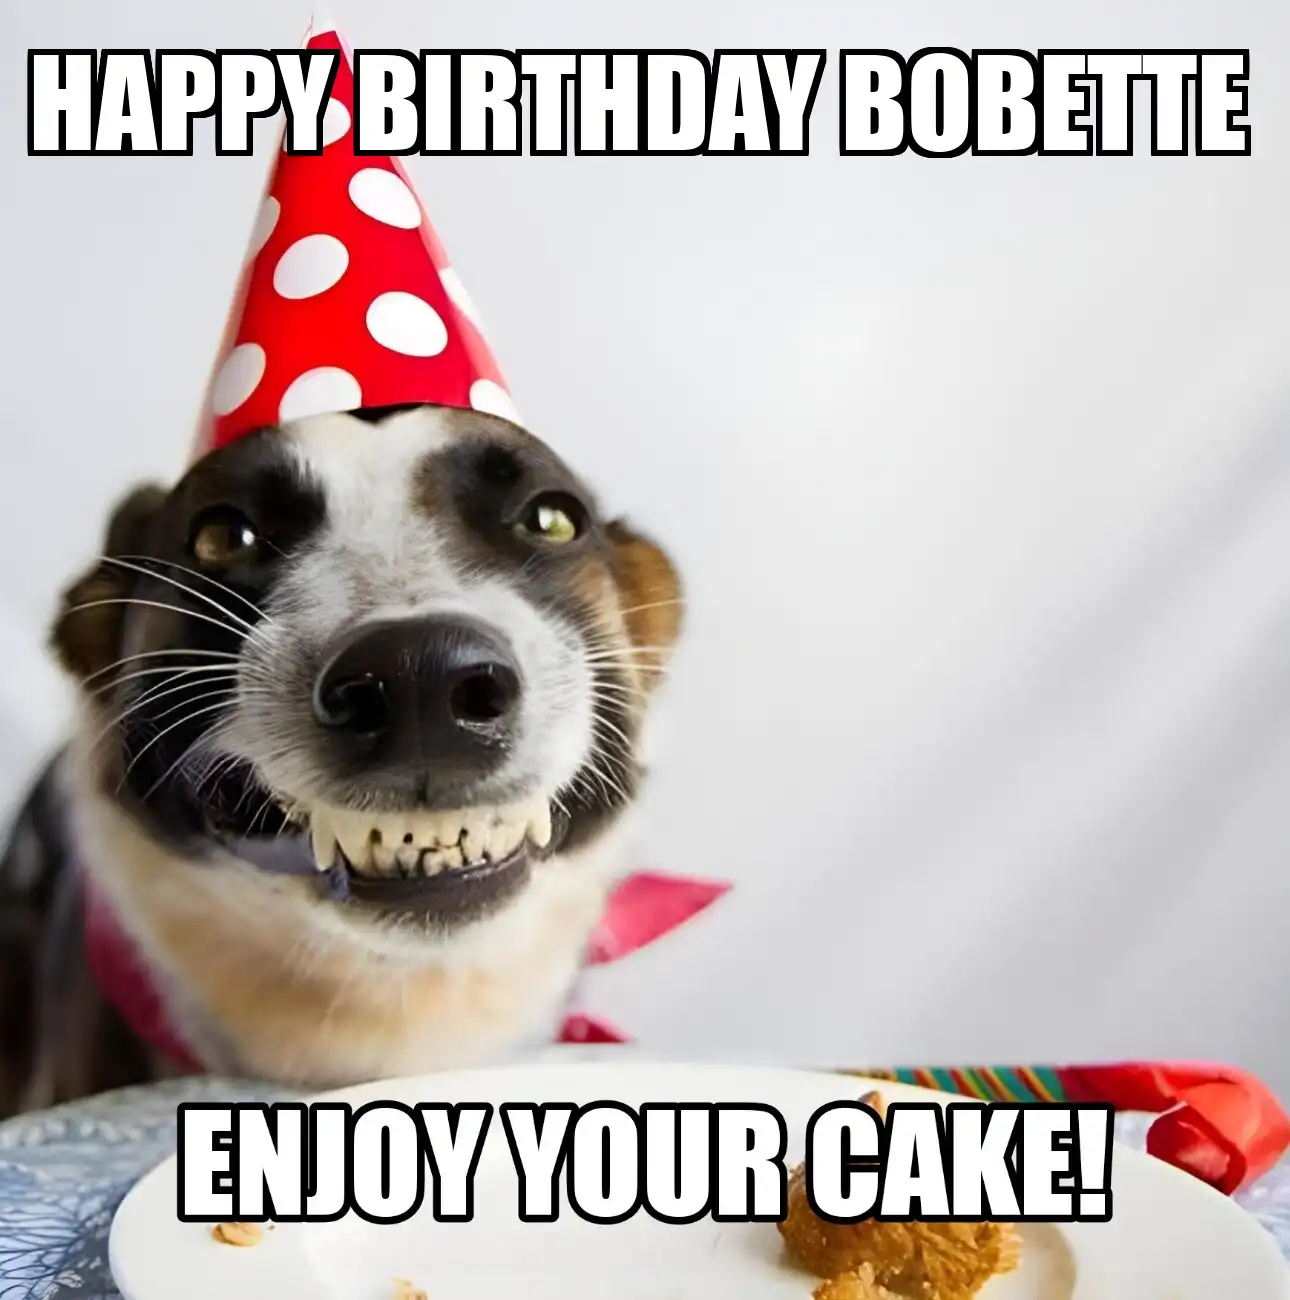 Happy Birthday Bobette Enjoy Your Cake Dog Meme